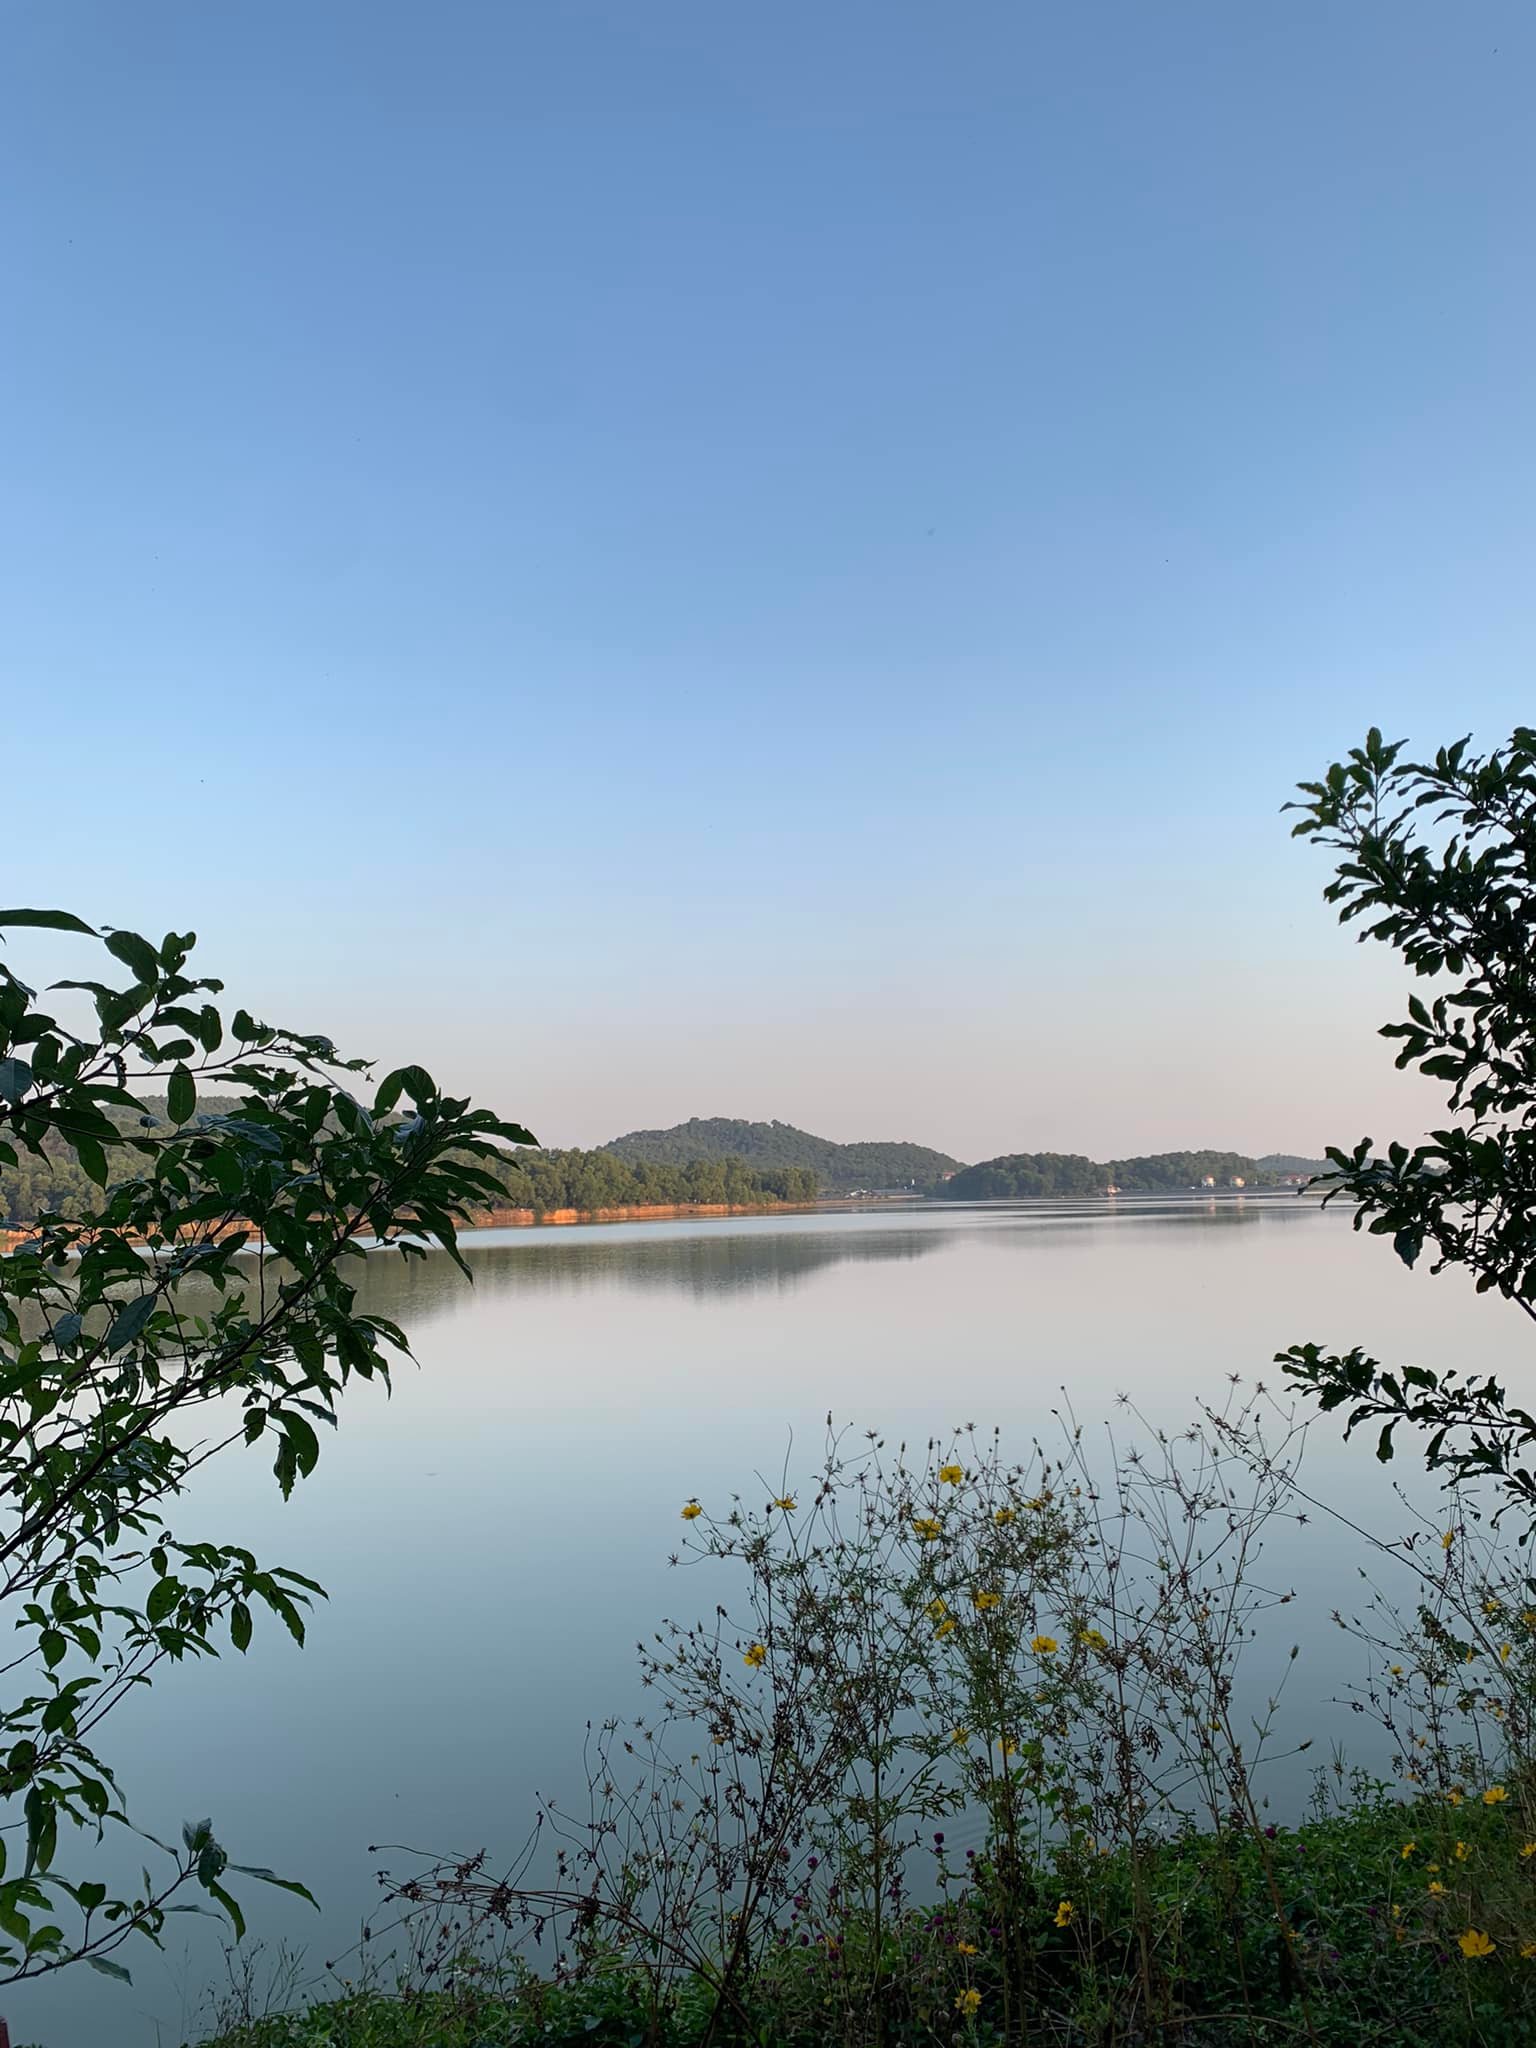 Ảnh: My hill - Khu sinh thái Hồ Đồng Quan